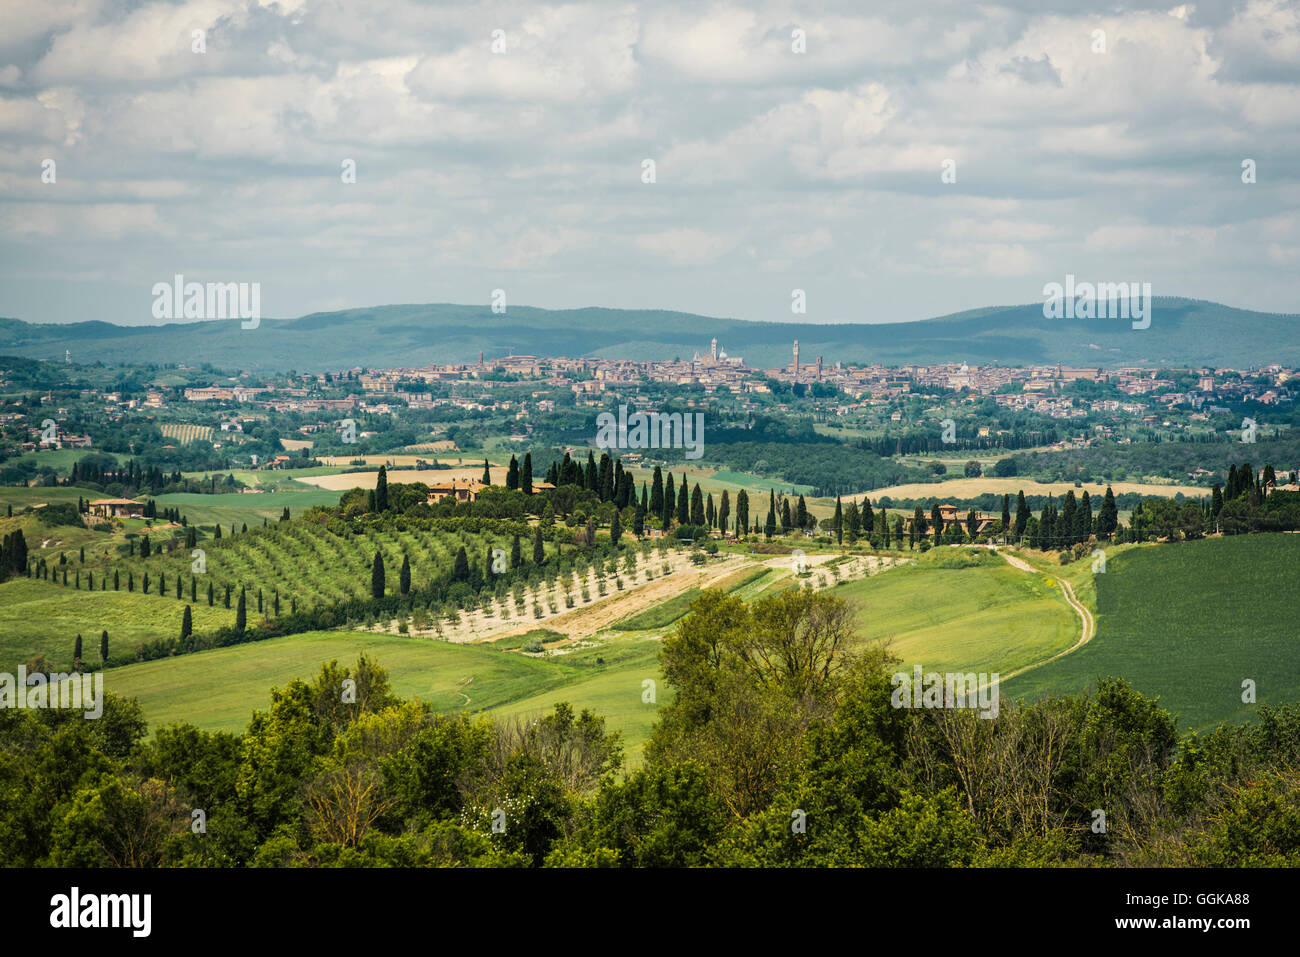 Landscape near Crete Senesi, near Siena, Tuscany, Italy Stock Photo